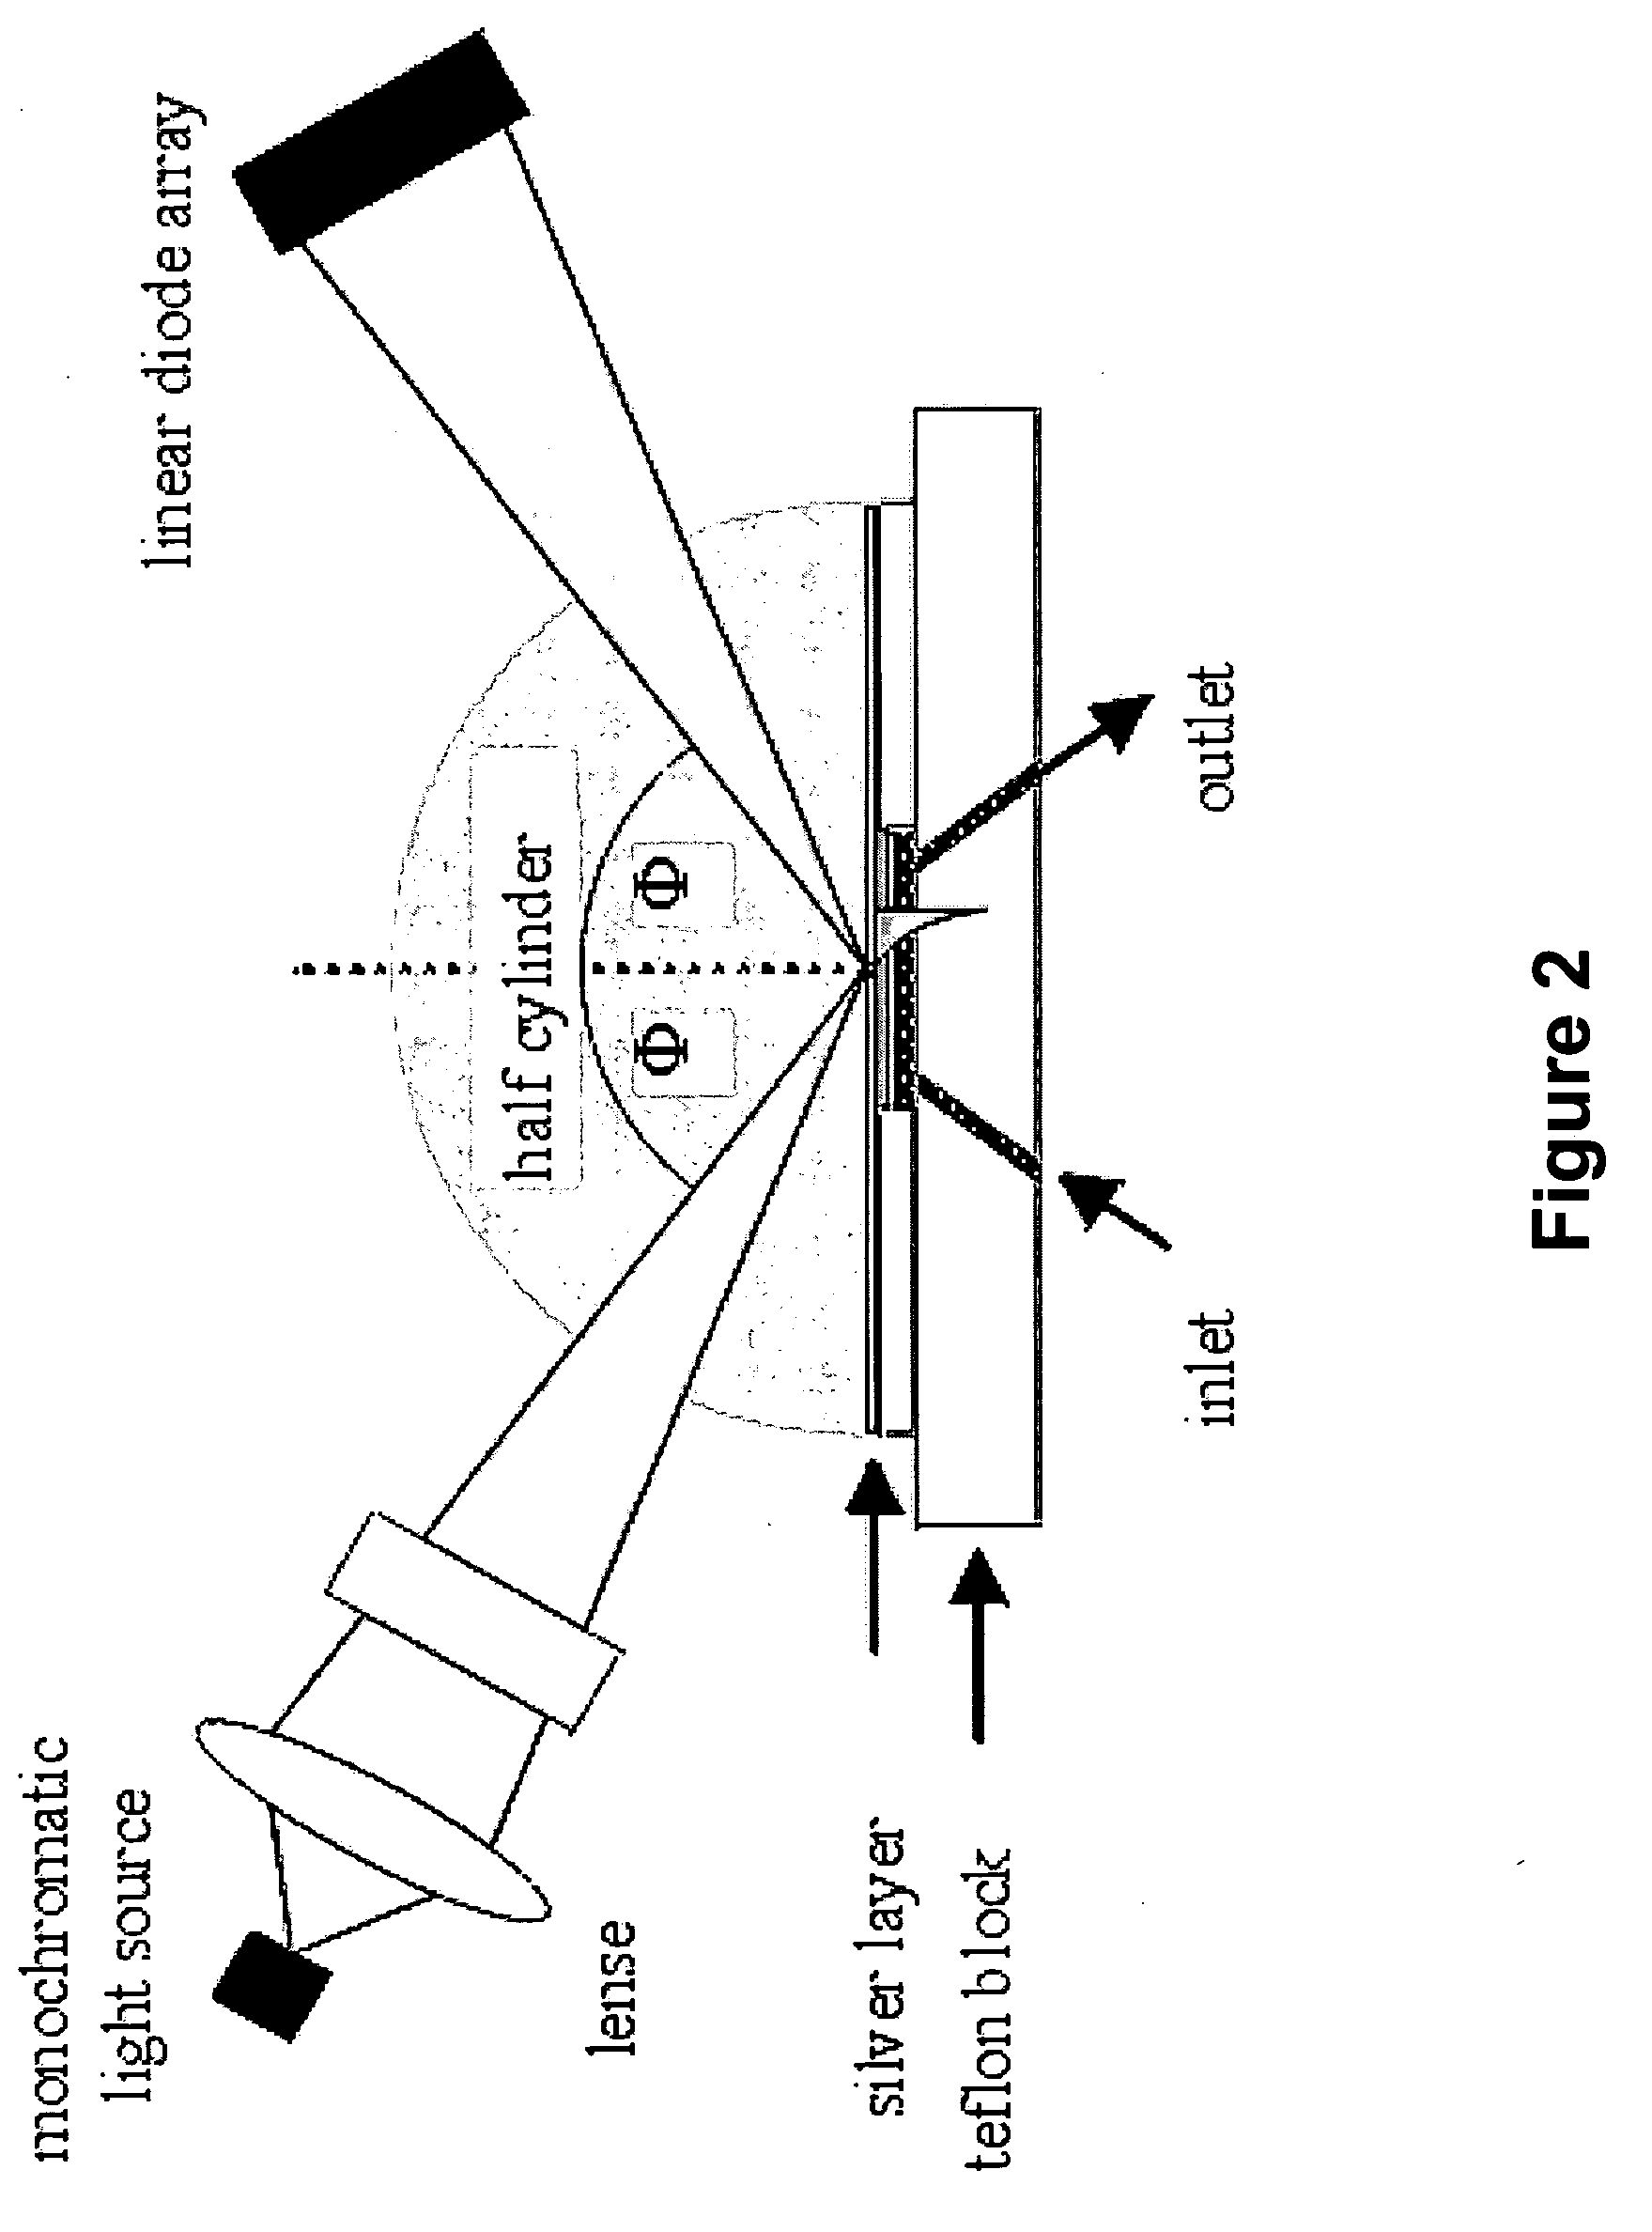 Electro-optic array interface